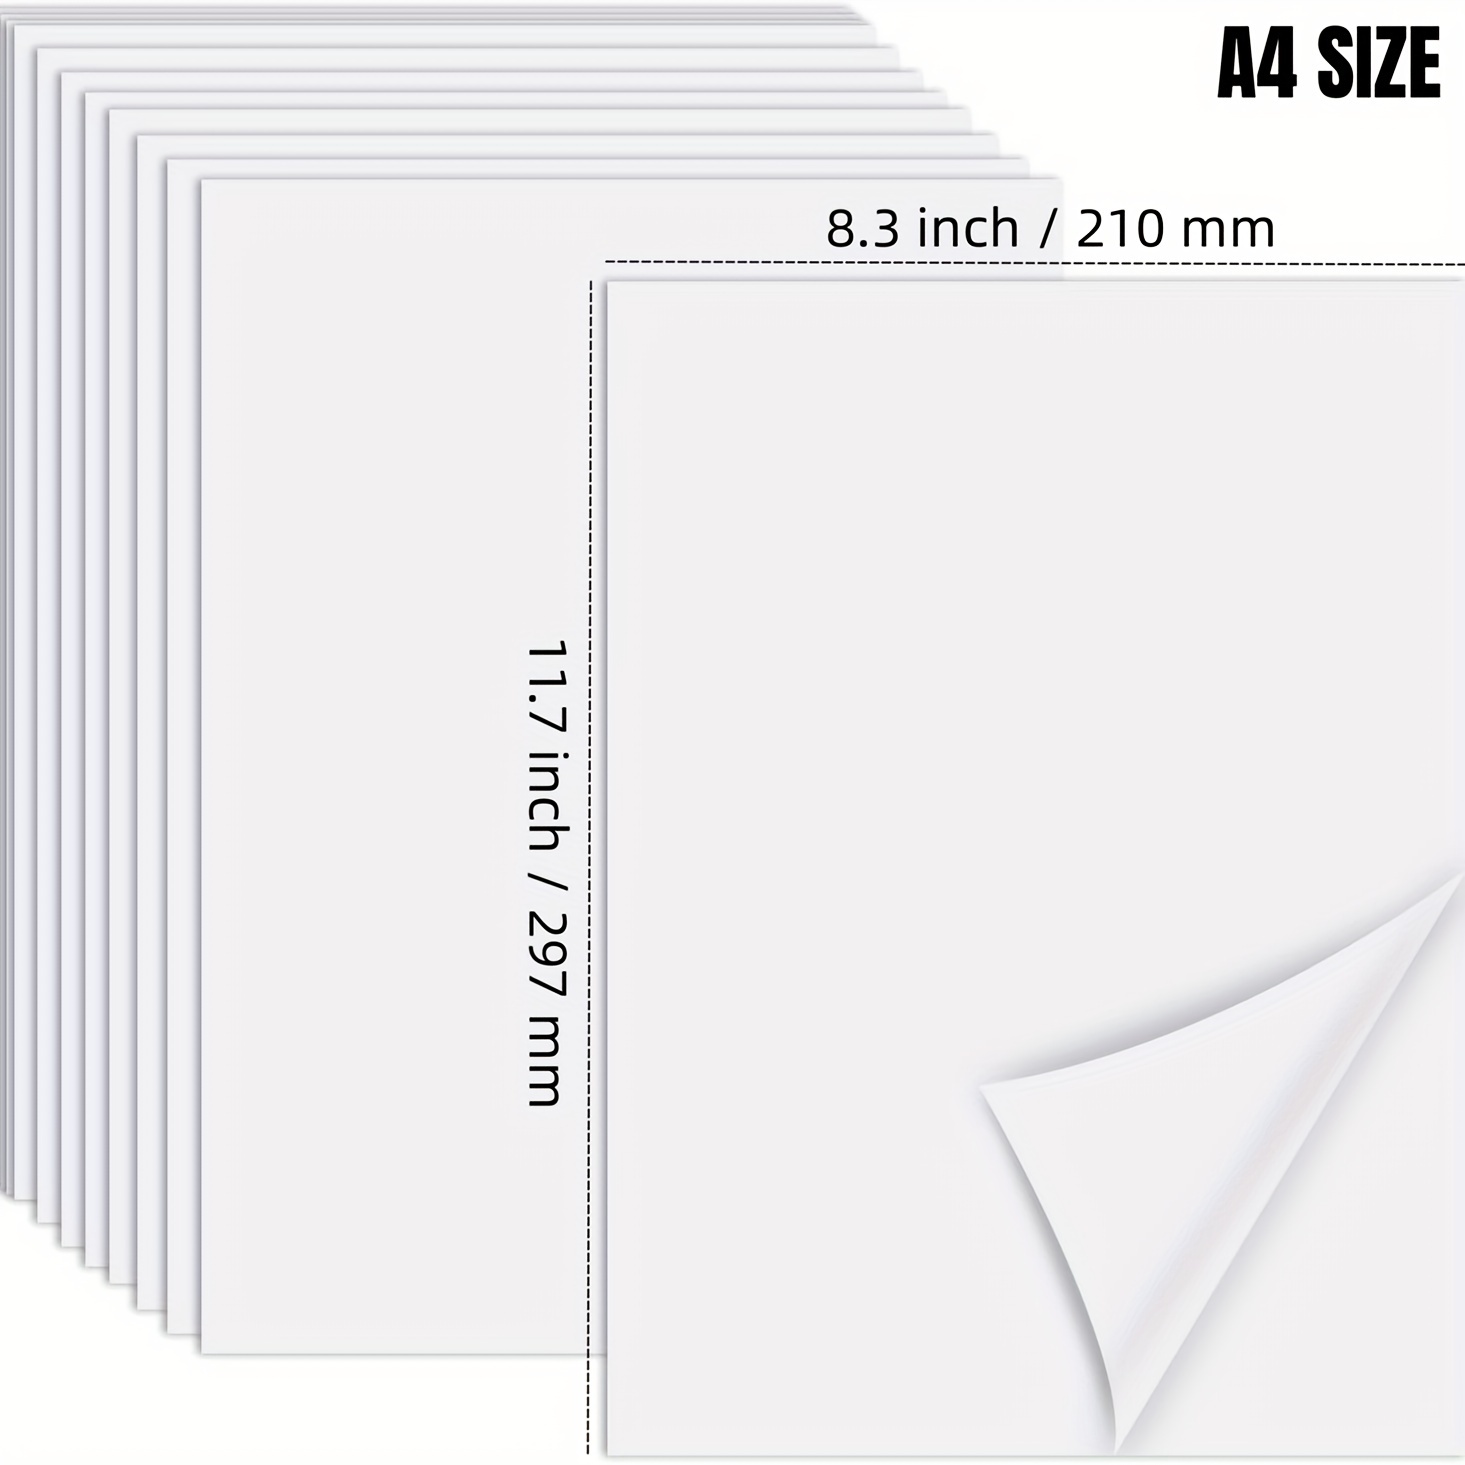 Papel adhesivo de vinilo imprimible para impresora de inyección de tinta,  transparente - 20 hojas autoadhesivas - Papel adhesivo impermeable - Tamaño